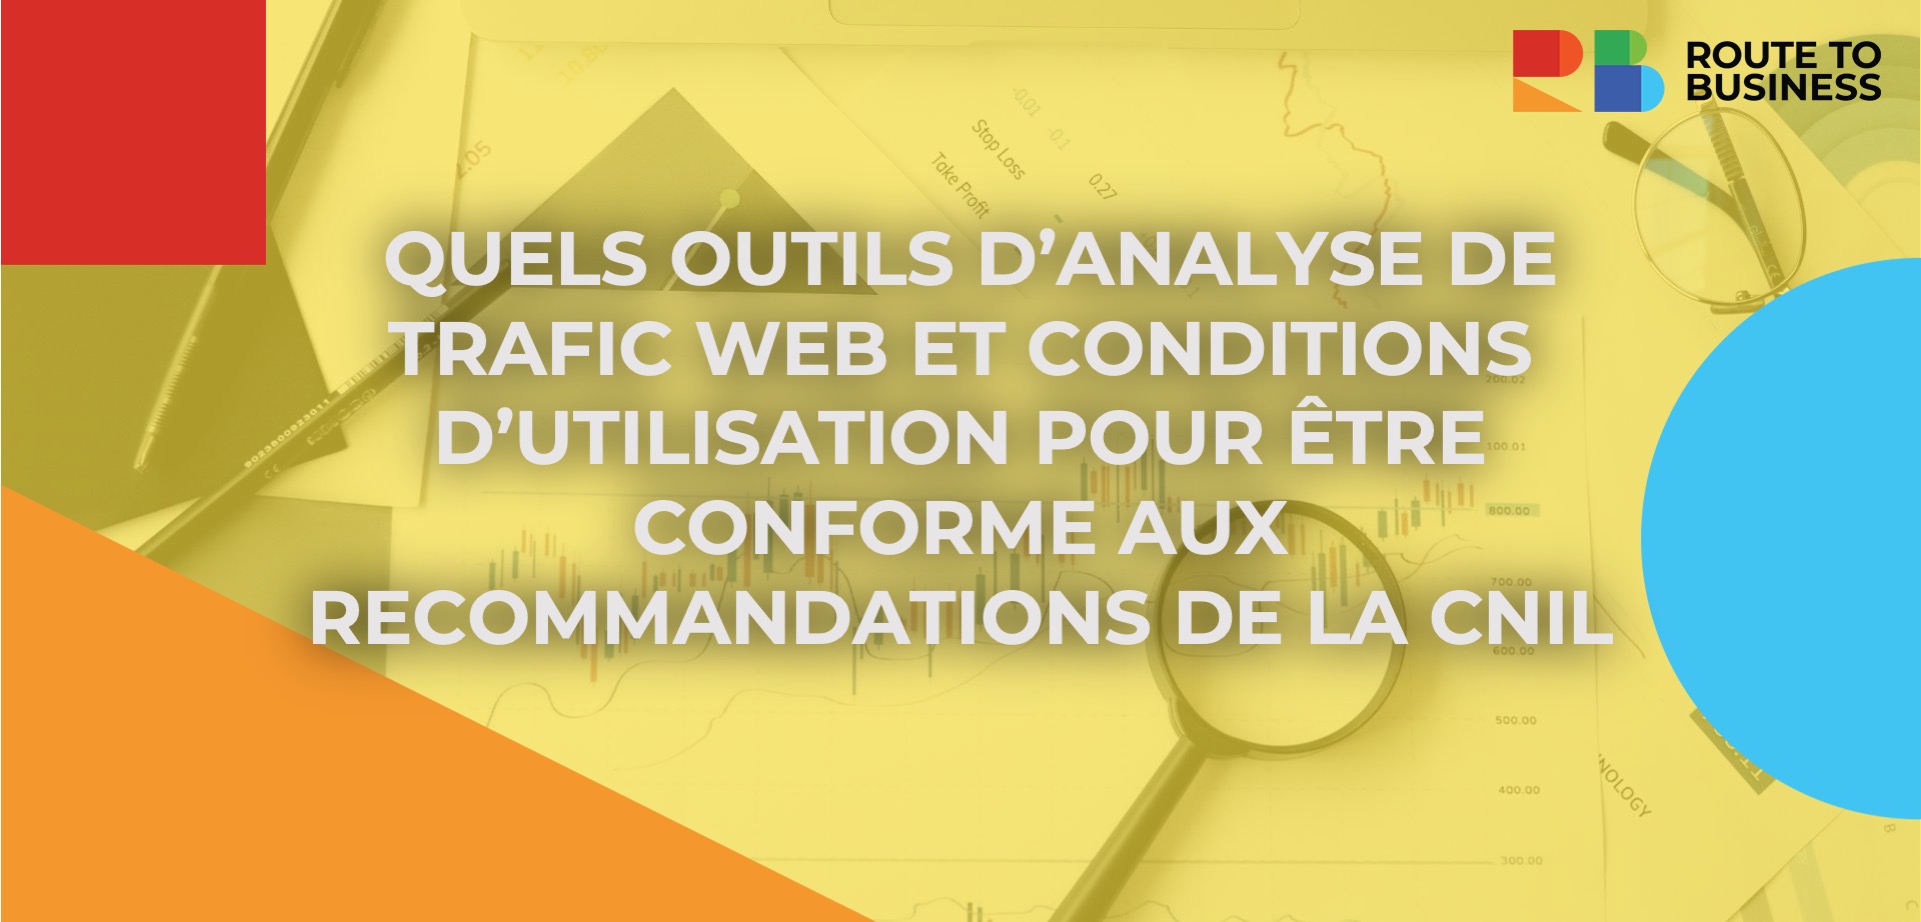  QUELS OUTILS D’ANALYSE DE TRAFIC WEB ET CONDITIONS D’UTILISATION POUR ÊTRE CONFORME AUX RECOMMANDATIONS DE LA CNIL